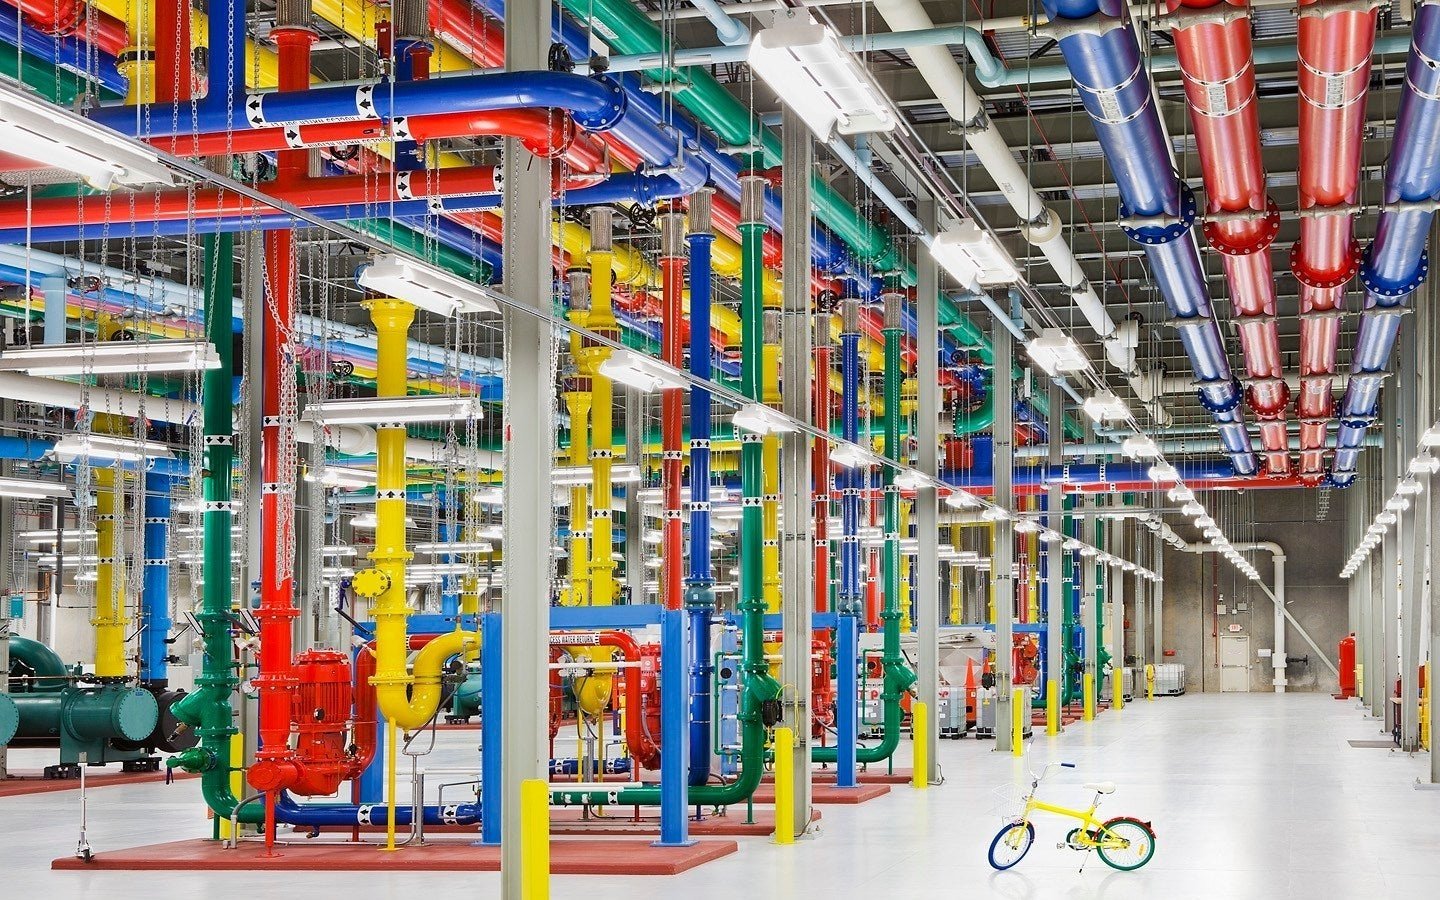 A Google datacenter